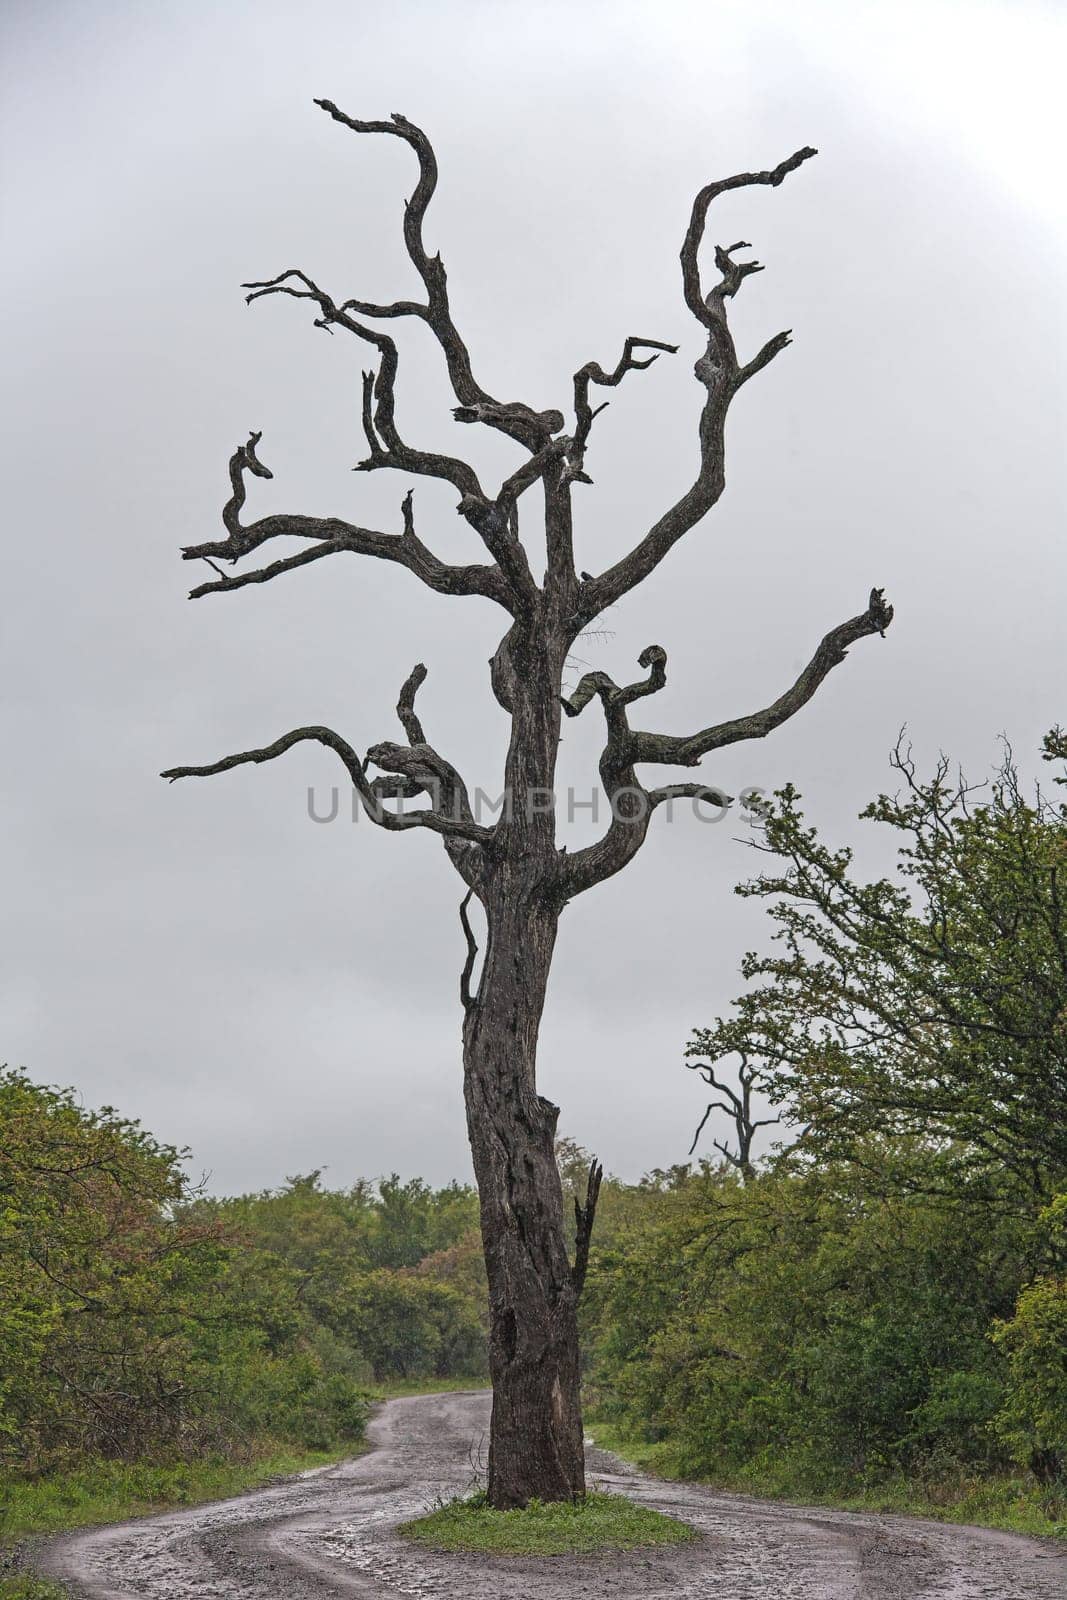 Dead Leadwood Tree 15162 by kobus_peche